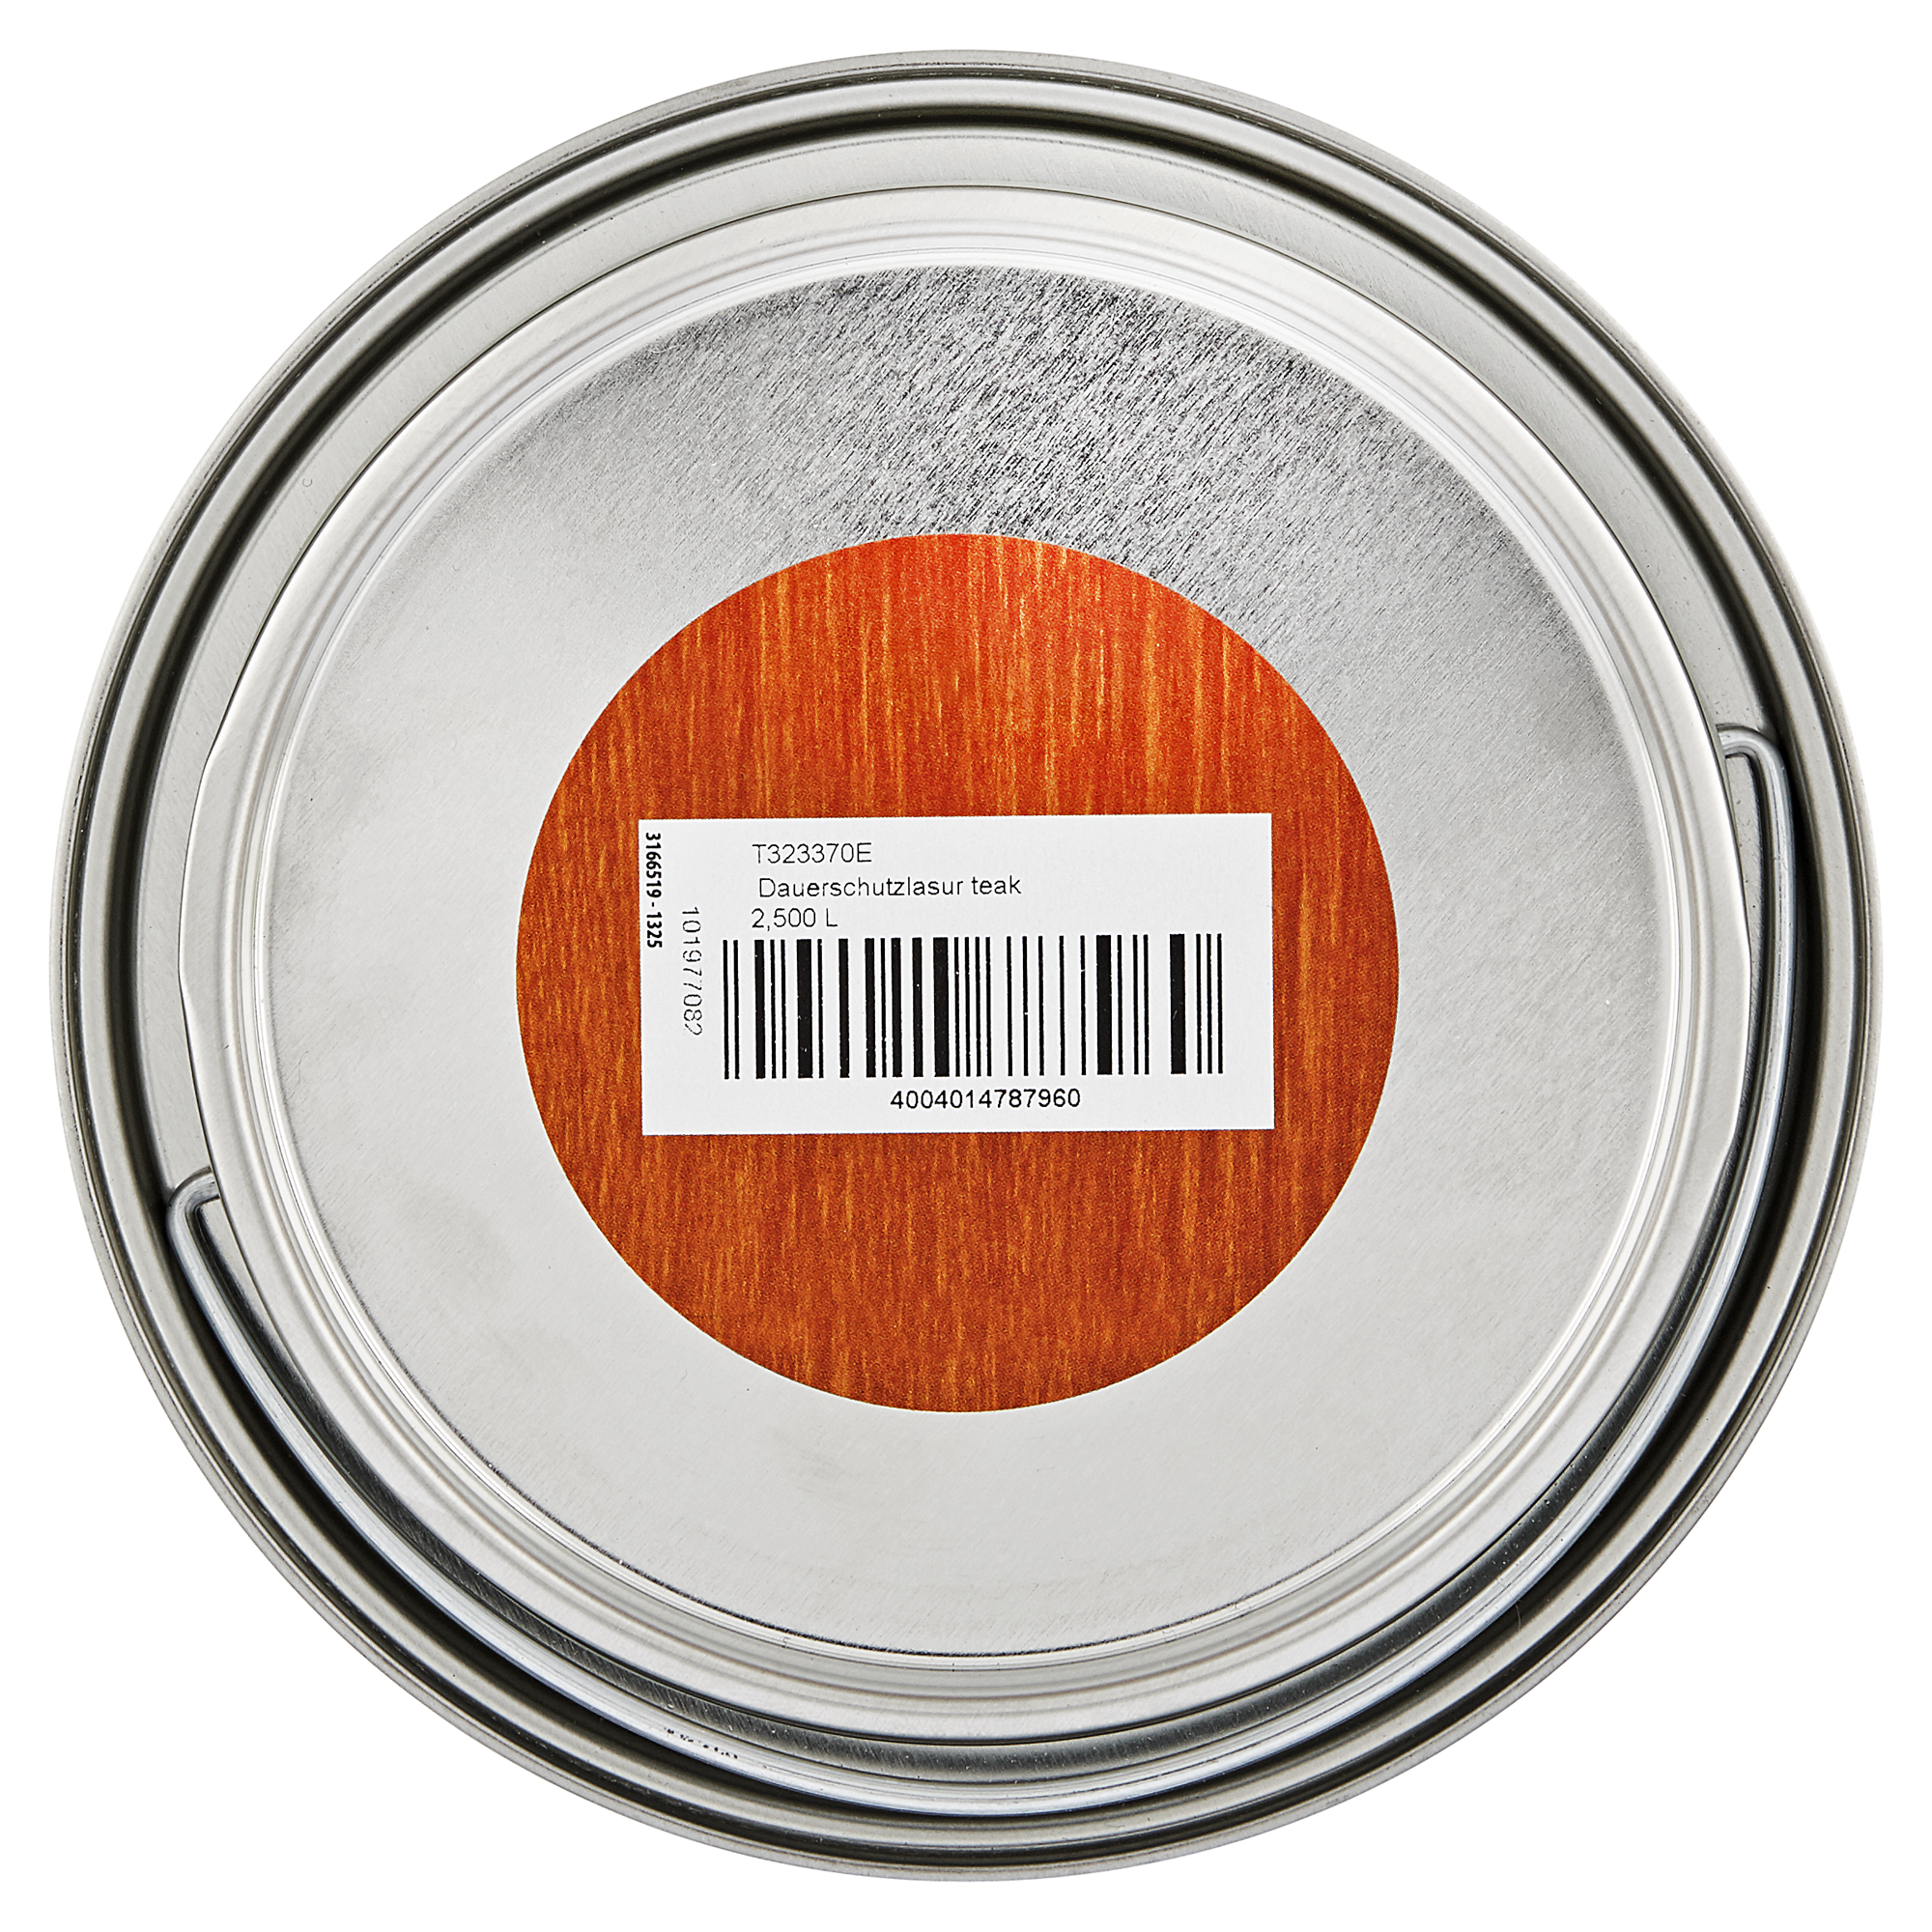 Dauerschutzlasur teakfarben 2,5 l + product picture